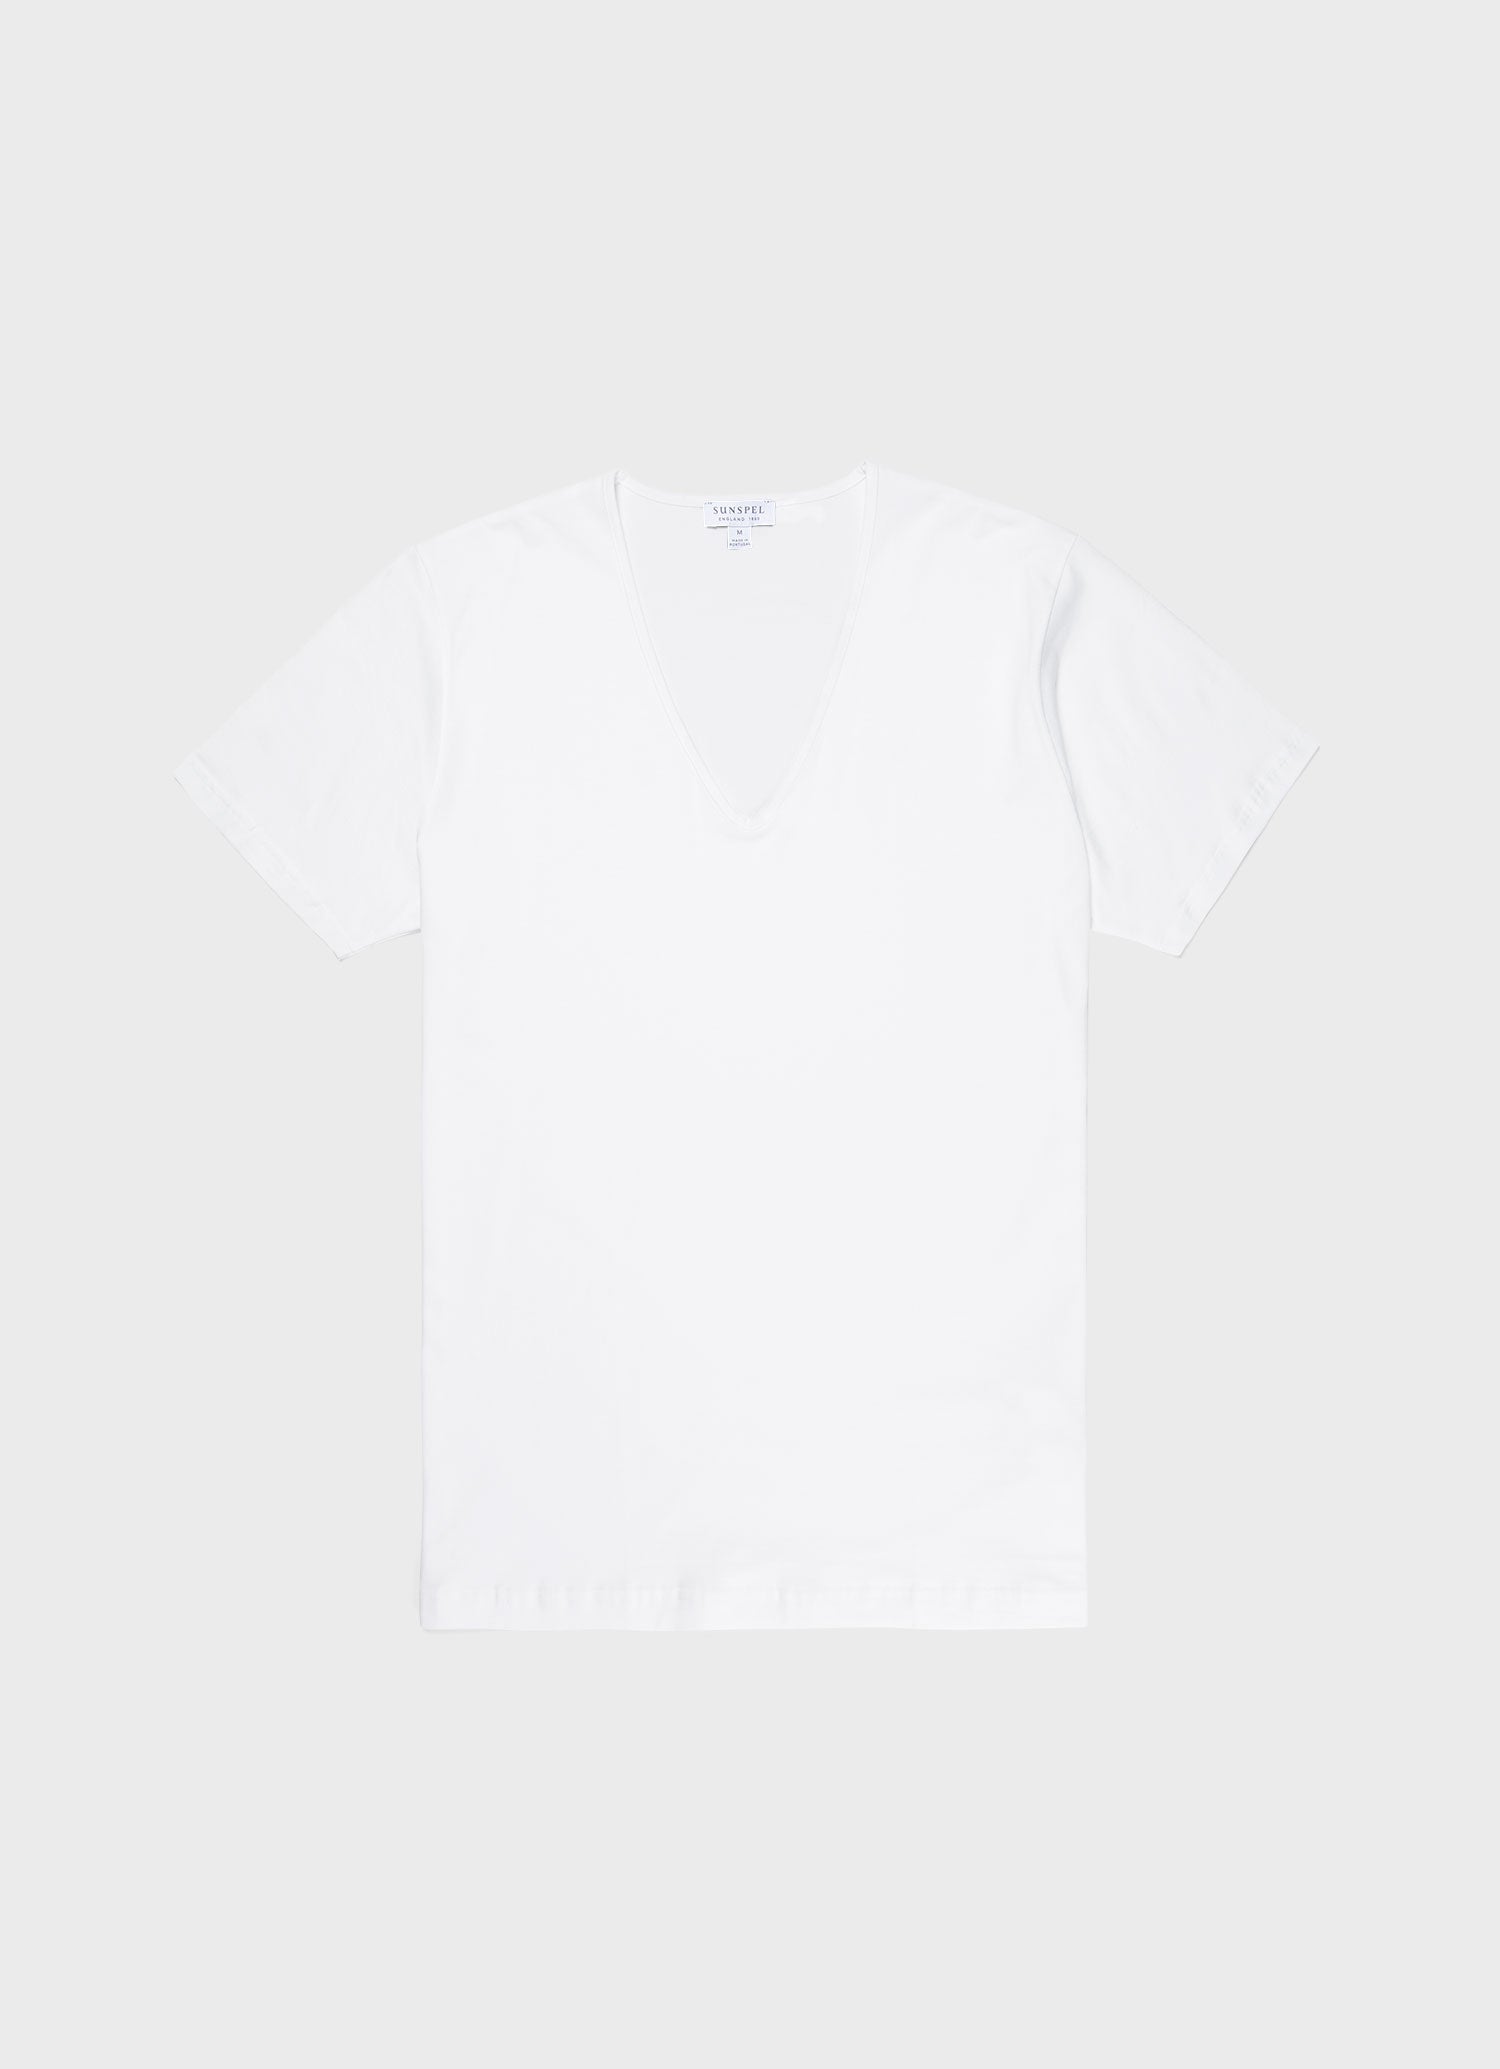 Men's Superfine Cotton V-Neck Underwear T-shirt in White